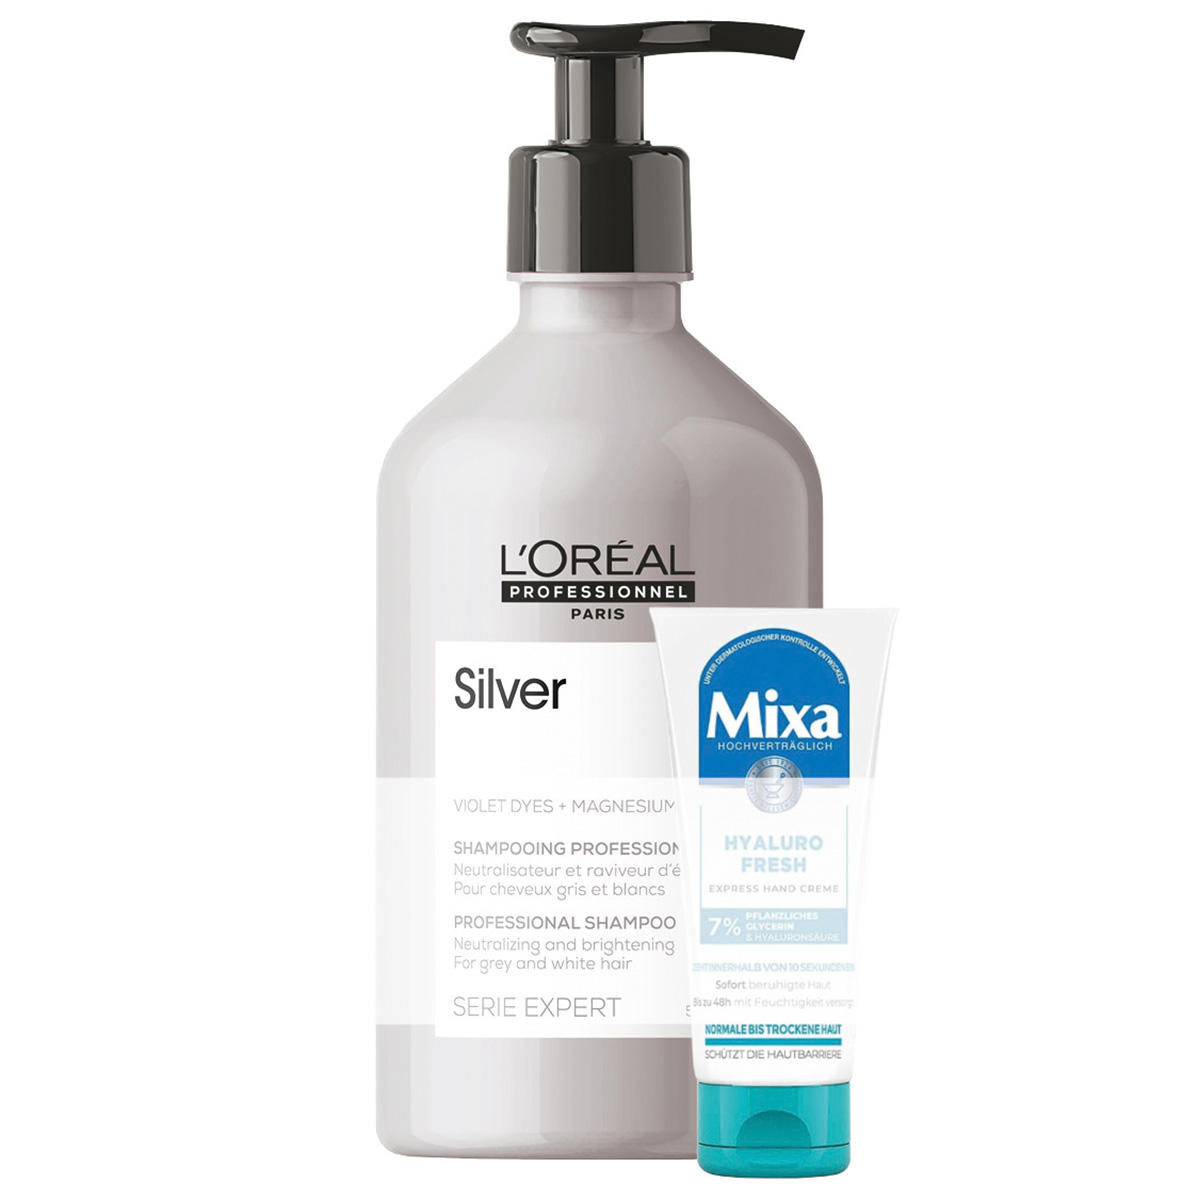 L'Oréal Professionnel Paris Serie Expert Silver Professional Shampoo 500 ml + cadeau - 1